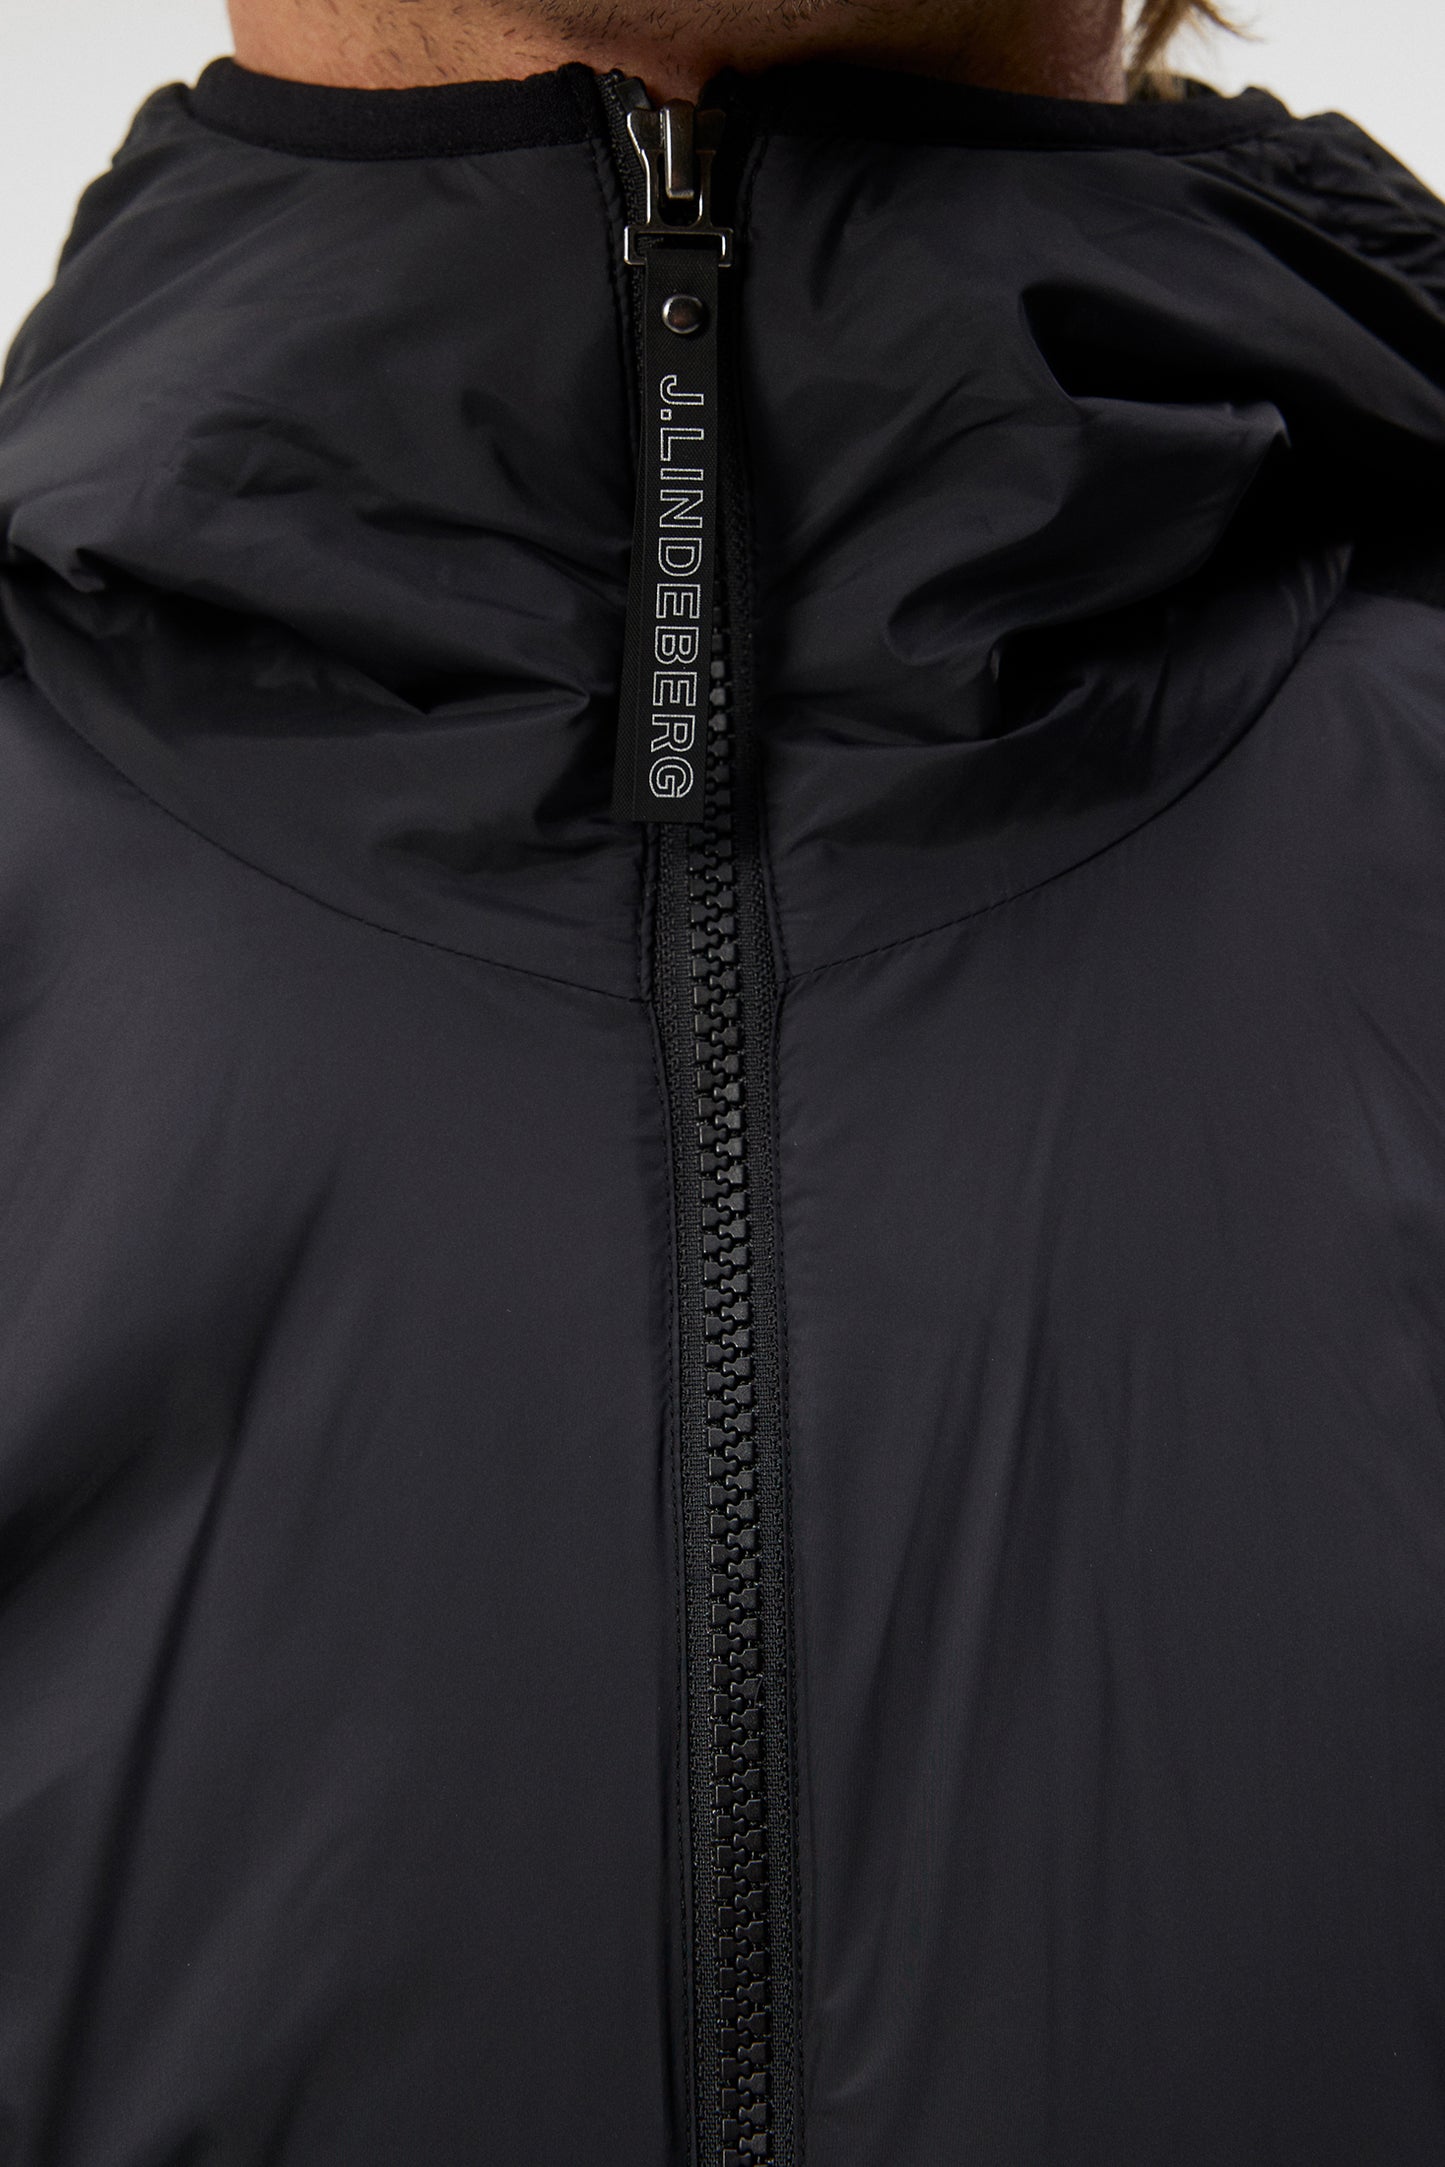 Cascade Hybrid Hood Jacket / Black